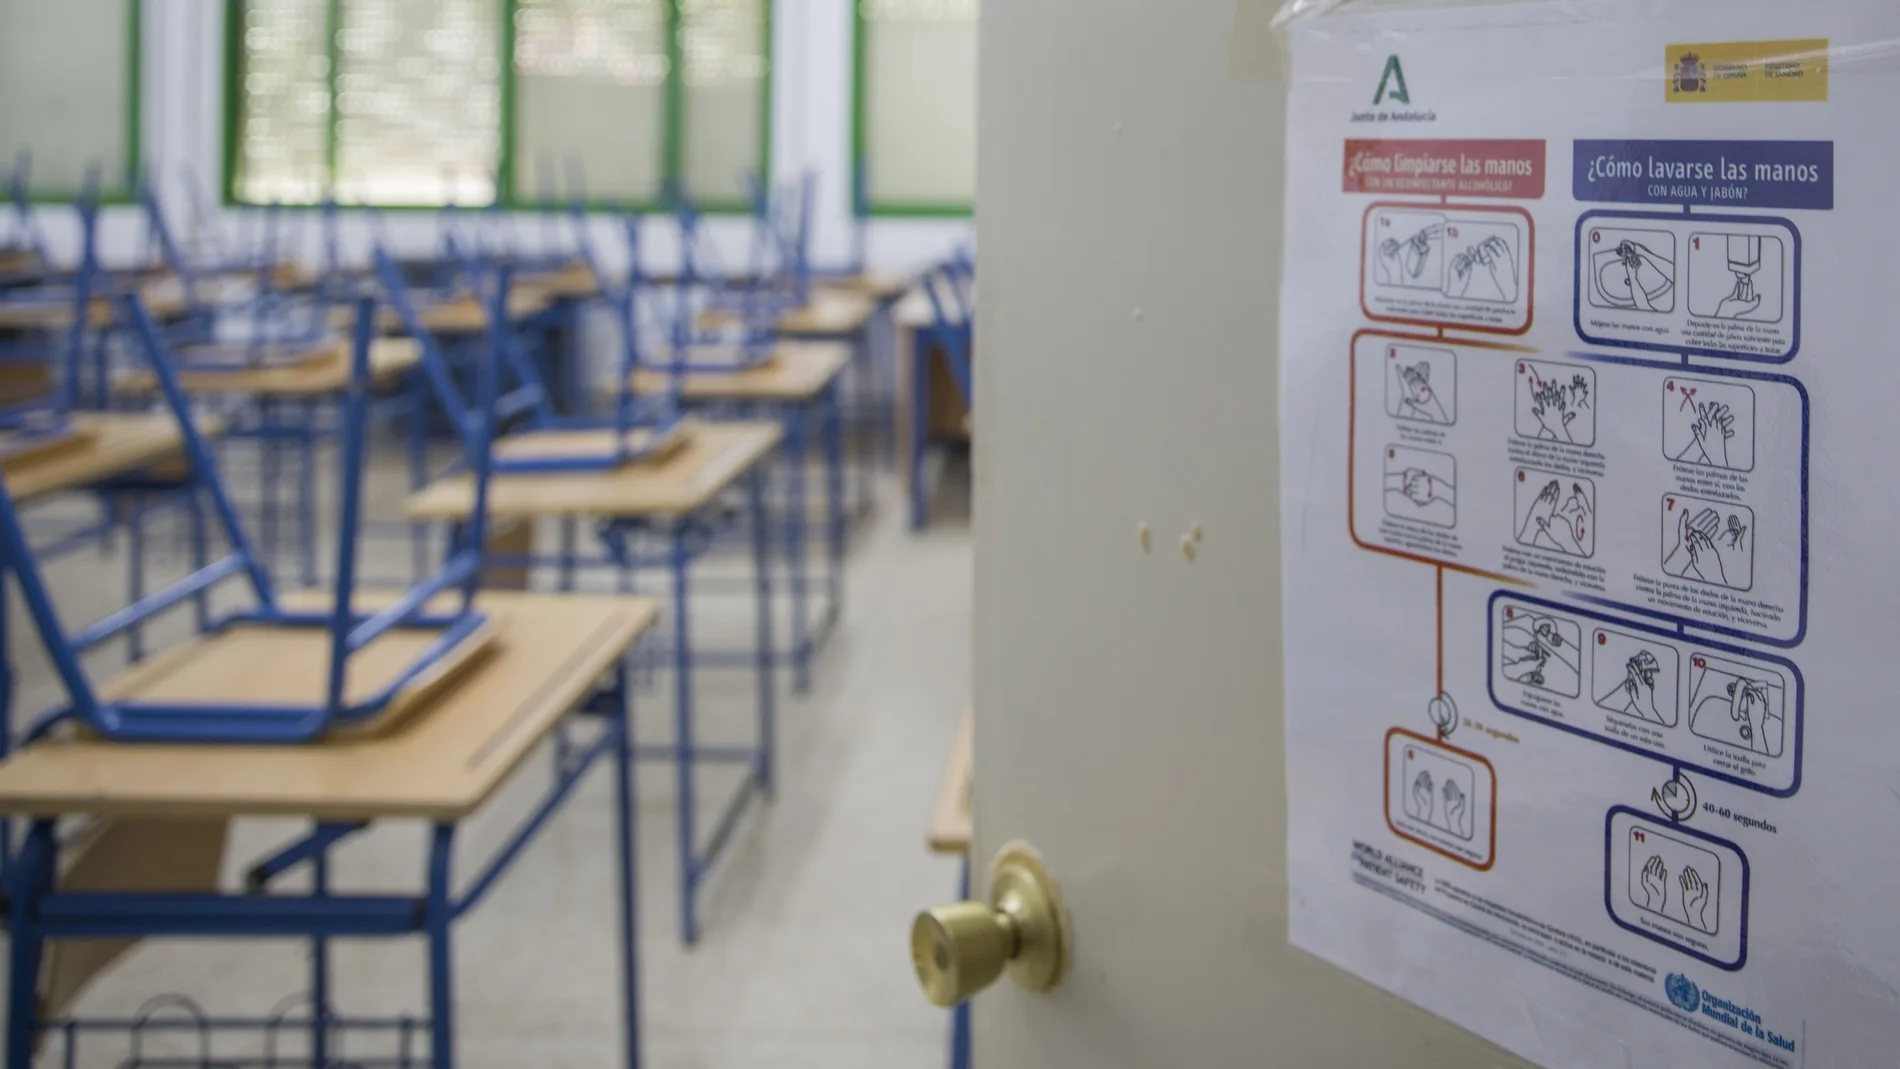 Los centros educativos preparan medidas para proteger a los alumnos y profesores del coronavirus